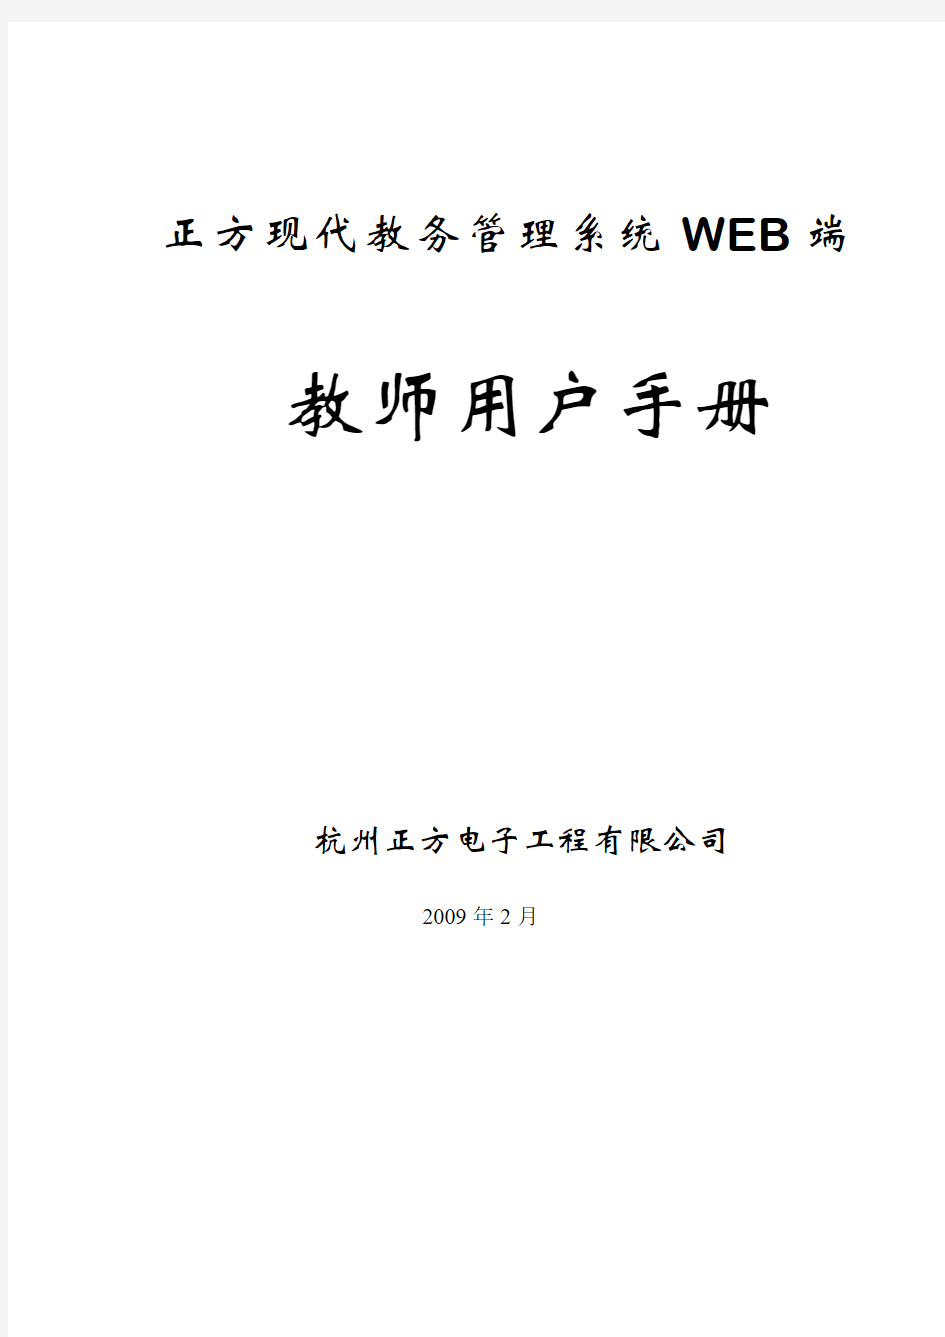 正方现代教务管理系统WEB端教师用户手册